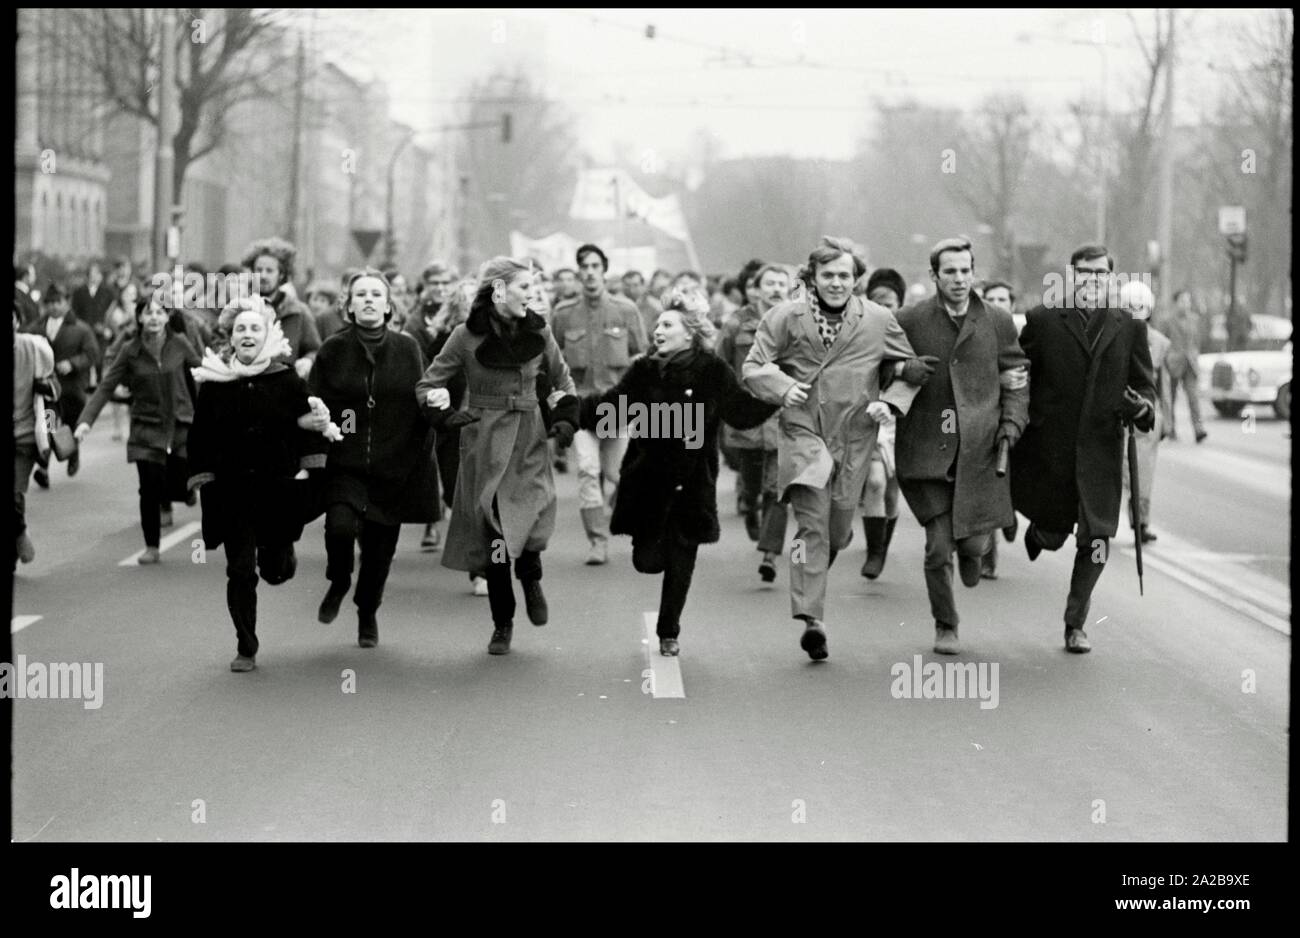 L'Allemagne. Francfort. 1.Février 1969. 1000 étudiants contre ralliement Frankfurter l'état d'urgence en Espagne. Auteur : Max Scheler/SZ Photo. Banque D'Images